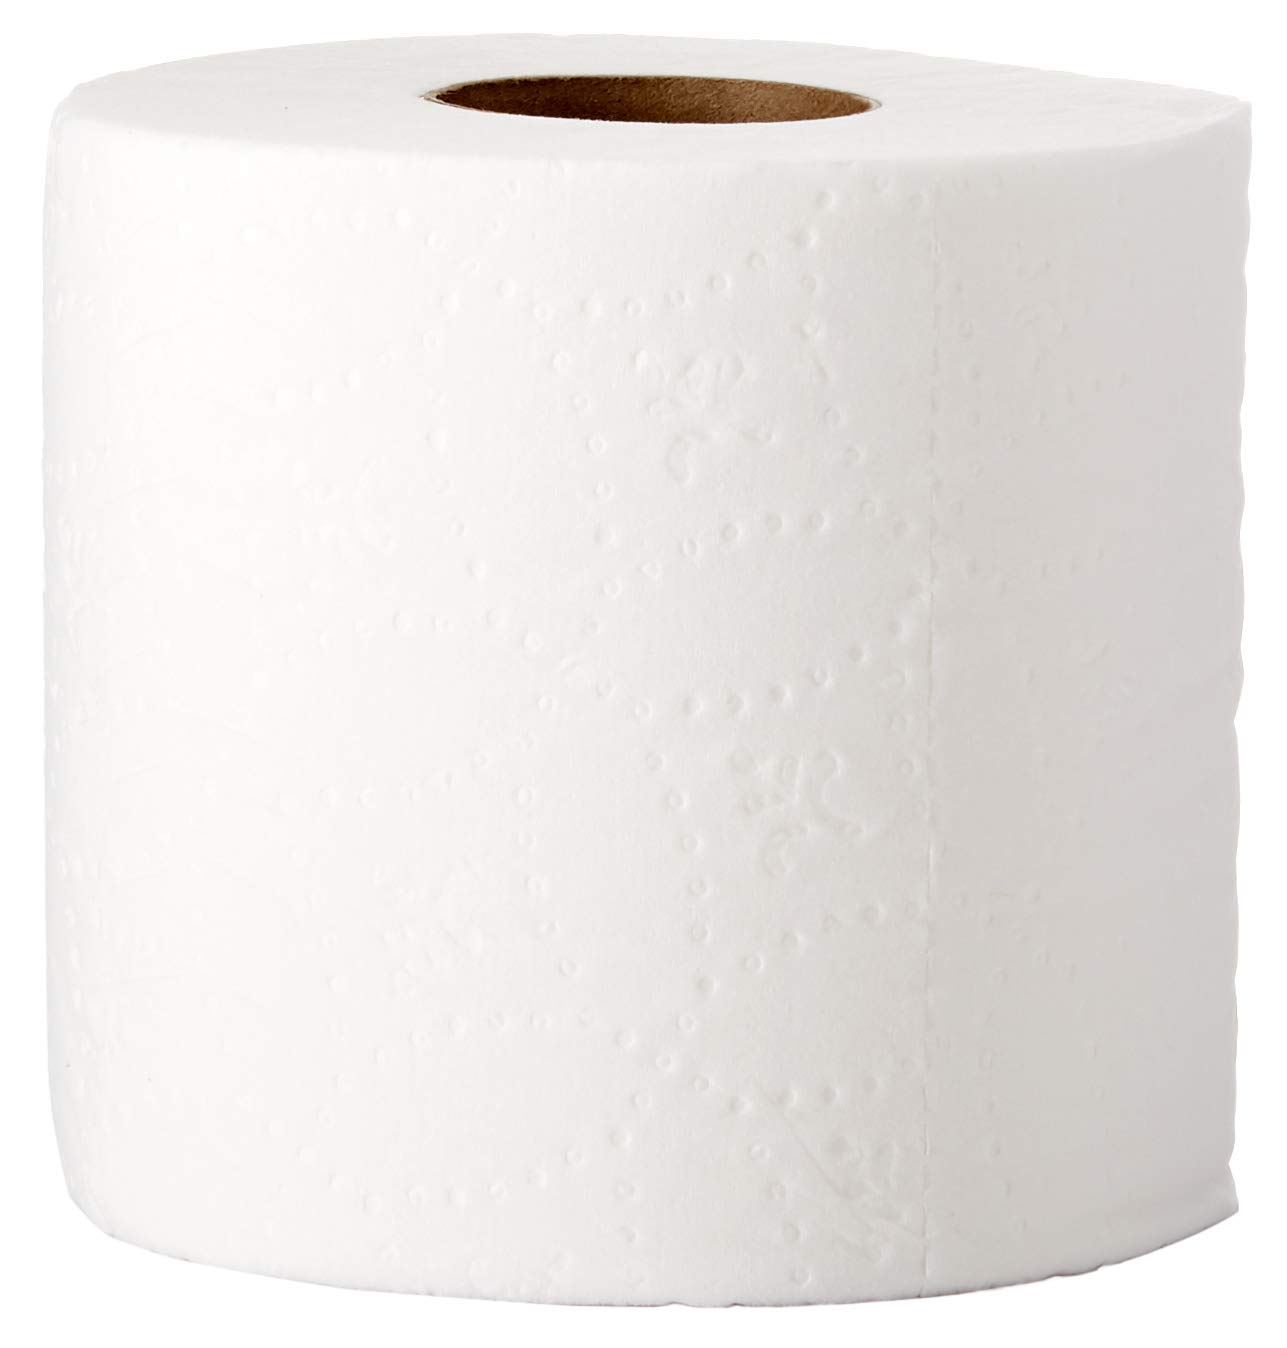 White Economy Tissue Paper (Full Sheets) - Cheap Wholesale Tissue